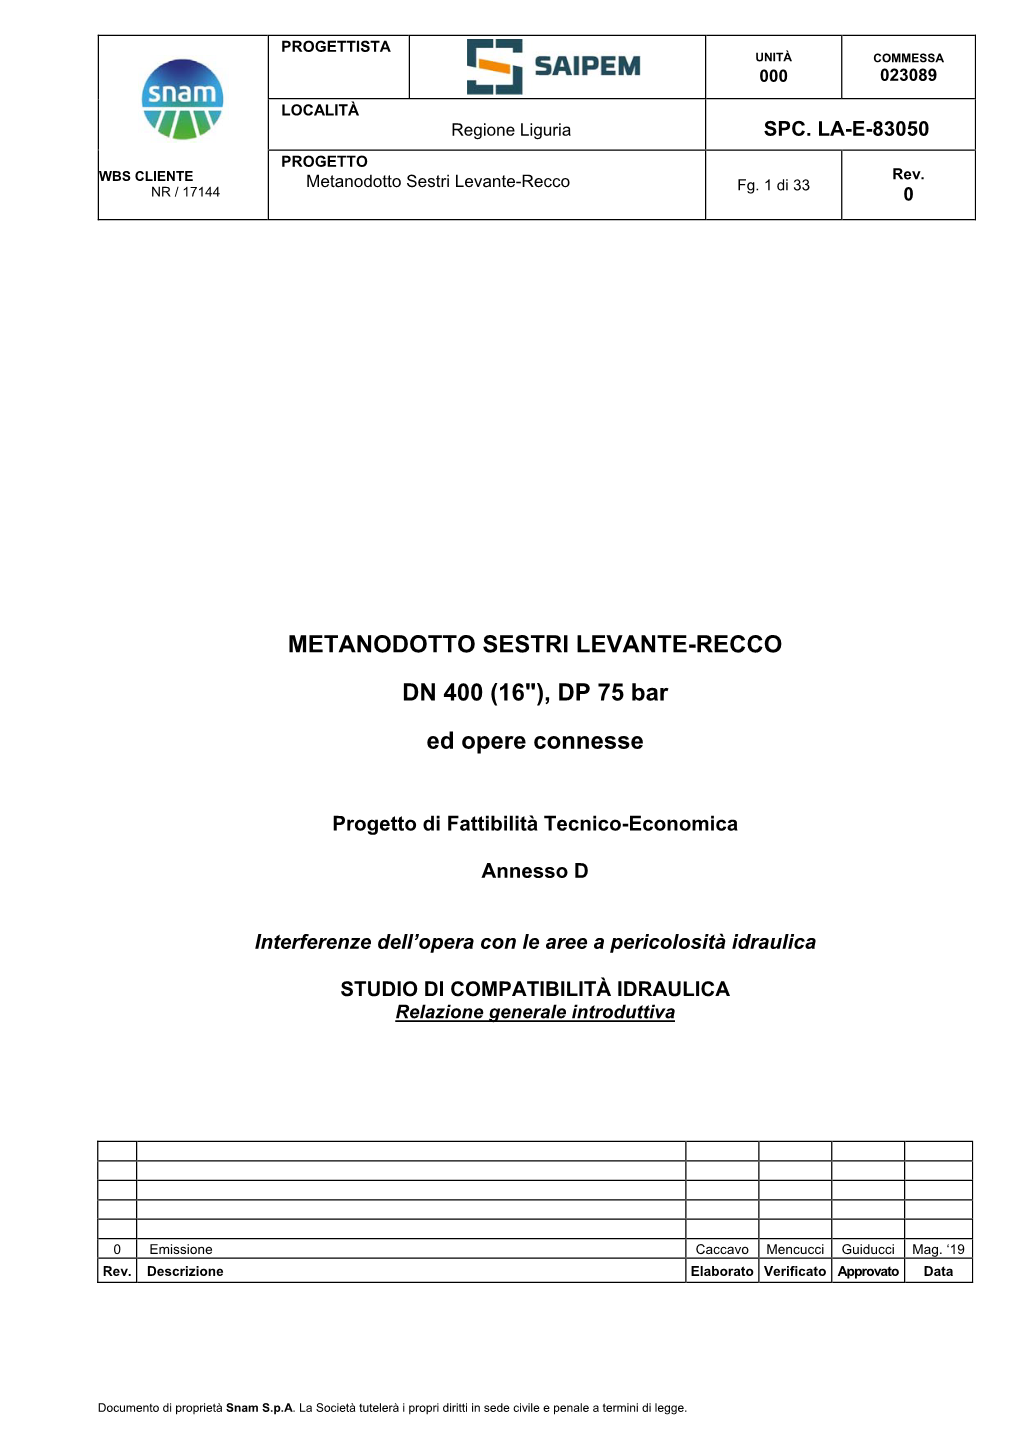 Metanodotto Sestri Levante-Recco Dn 400 (16